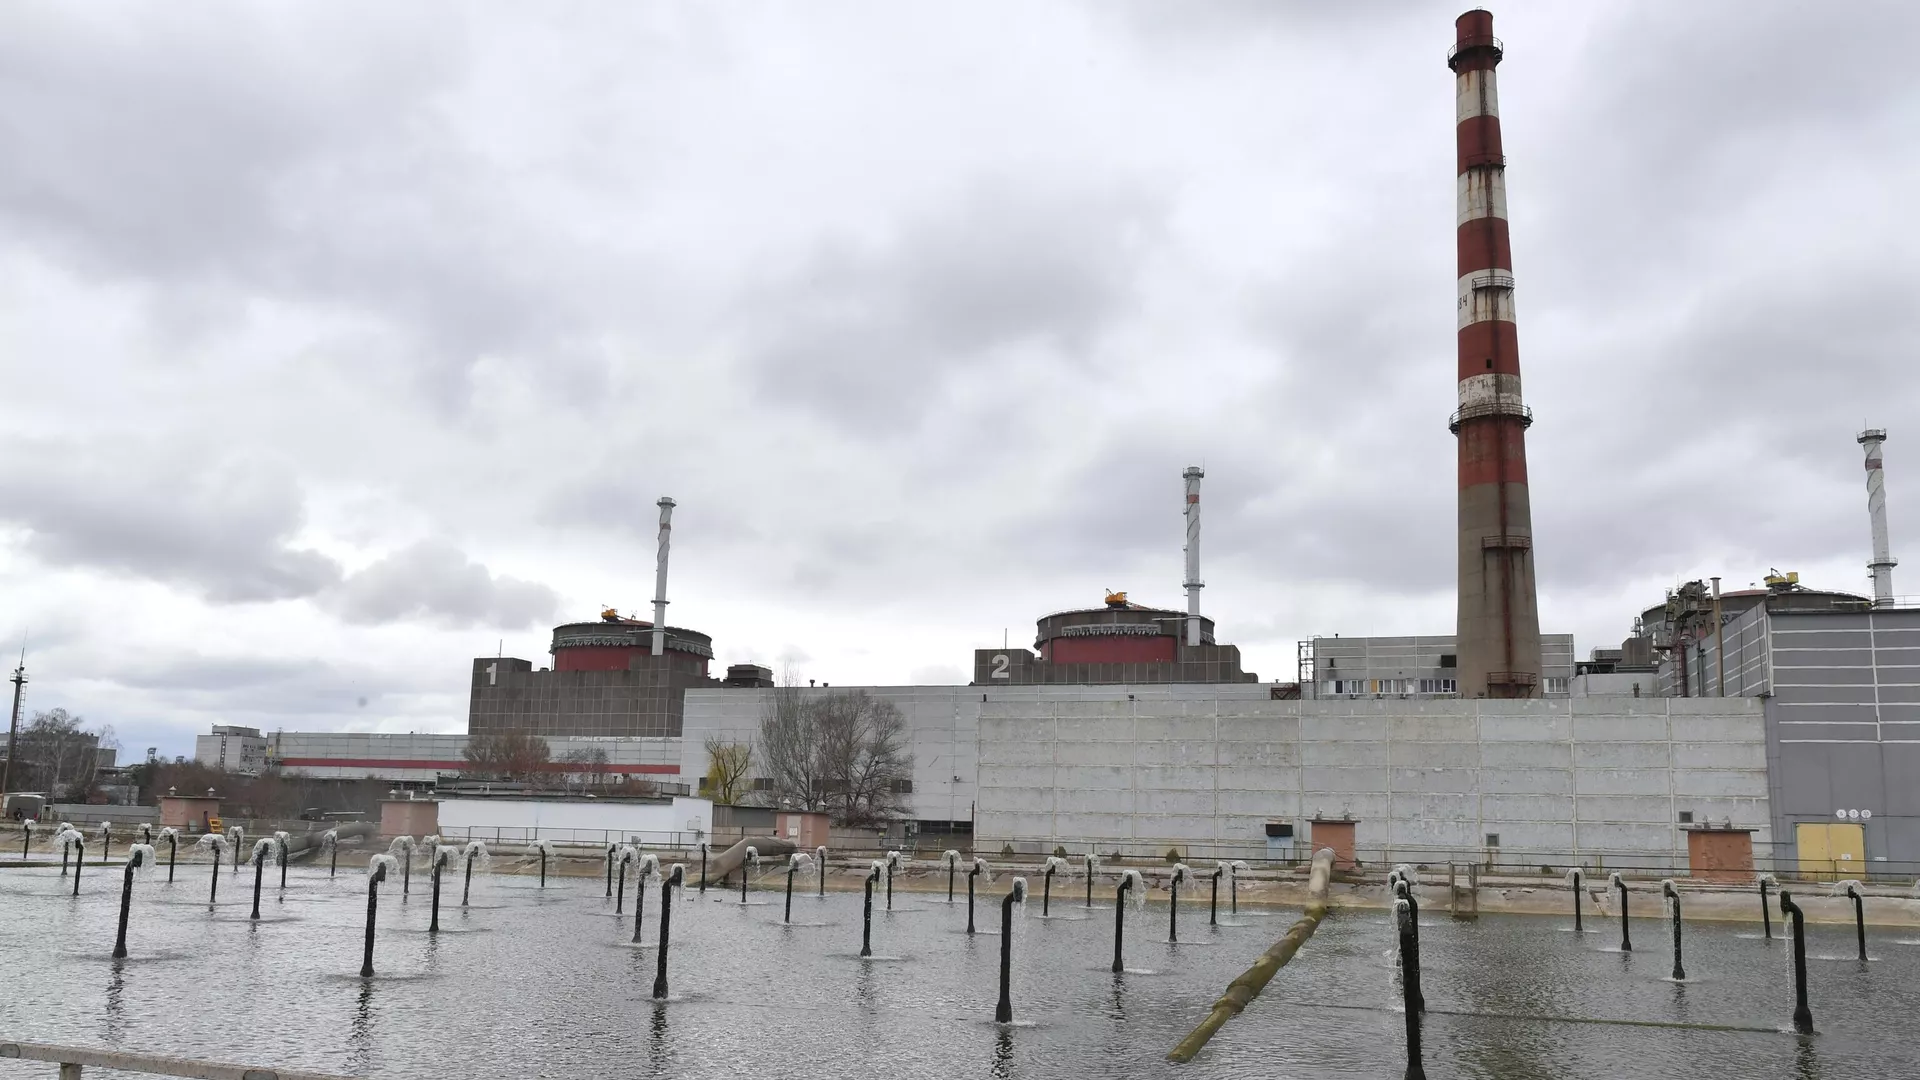 El jefe del Organismo Internacional de Energía Atómica (OIEA) dirigirá la rotación de expertos en la central de Zaporozhie tras inundaciones